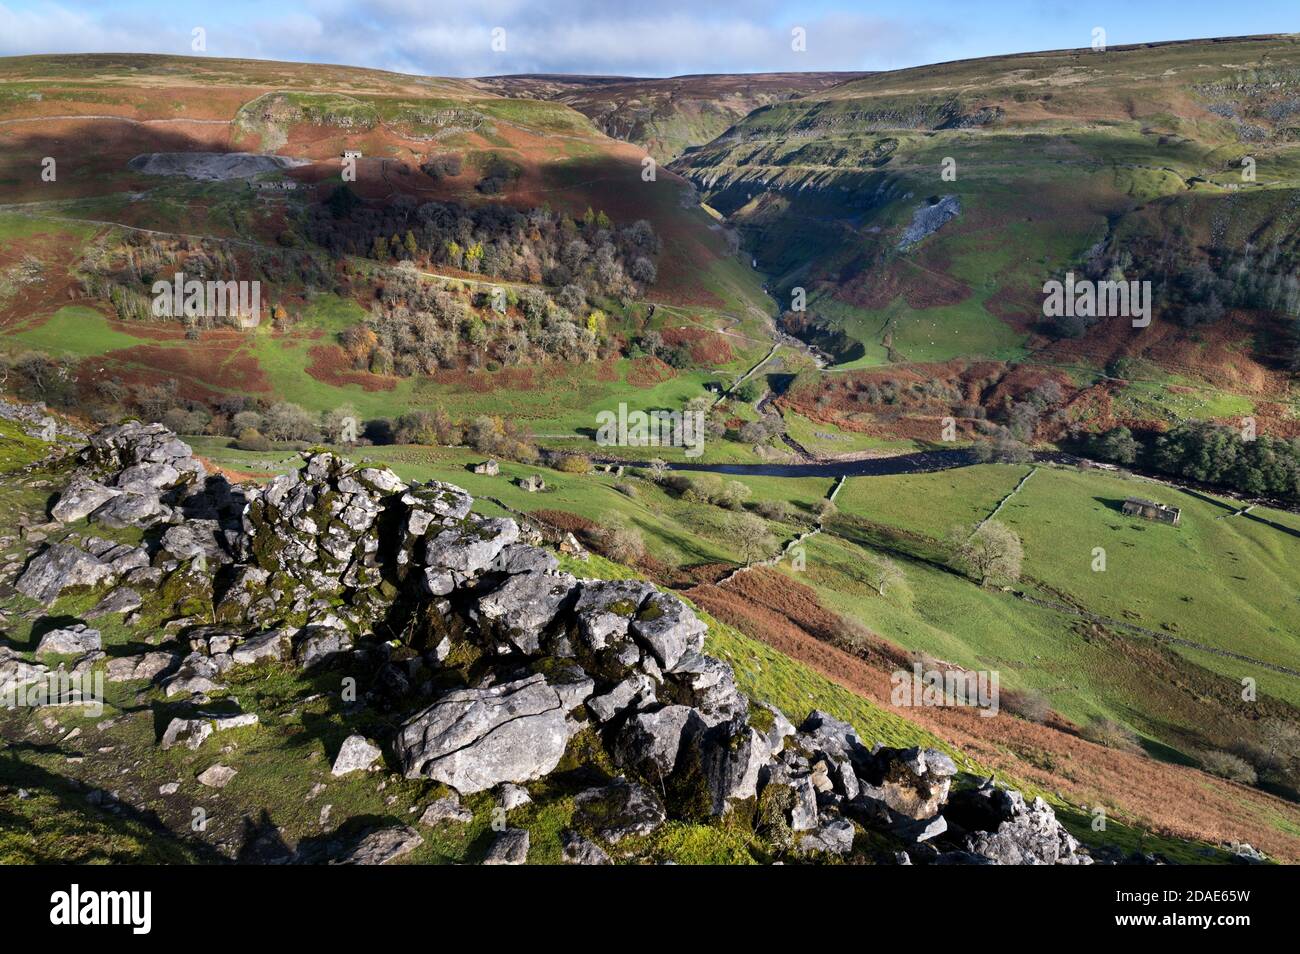 Vista autunnale di Swaledale, a monte del villaggio di Muker nel Parco Nazionale delle Dales dello Yorkshire, Regno Unito. Vista dal sentiero Pennine Way. Foto Stock